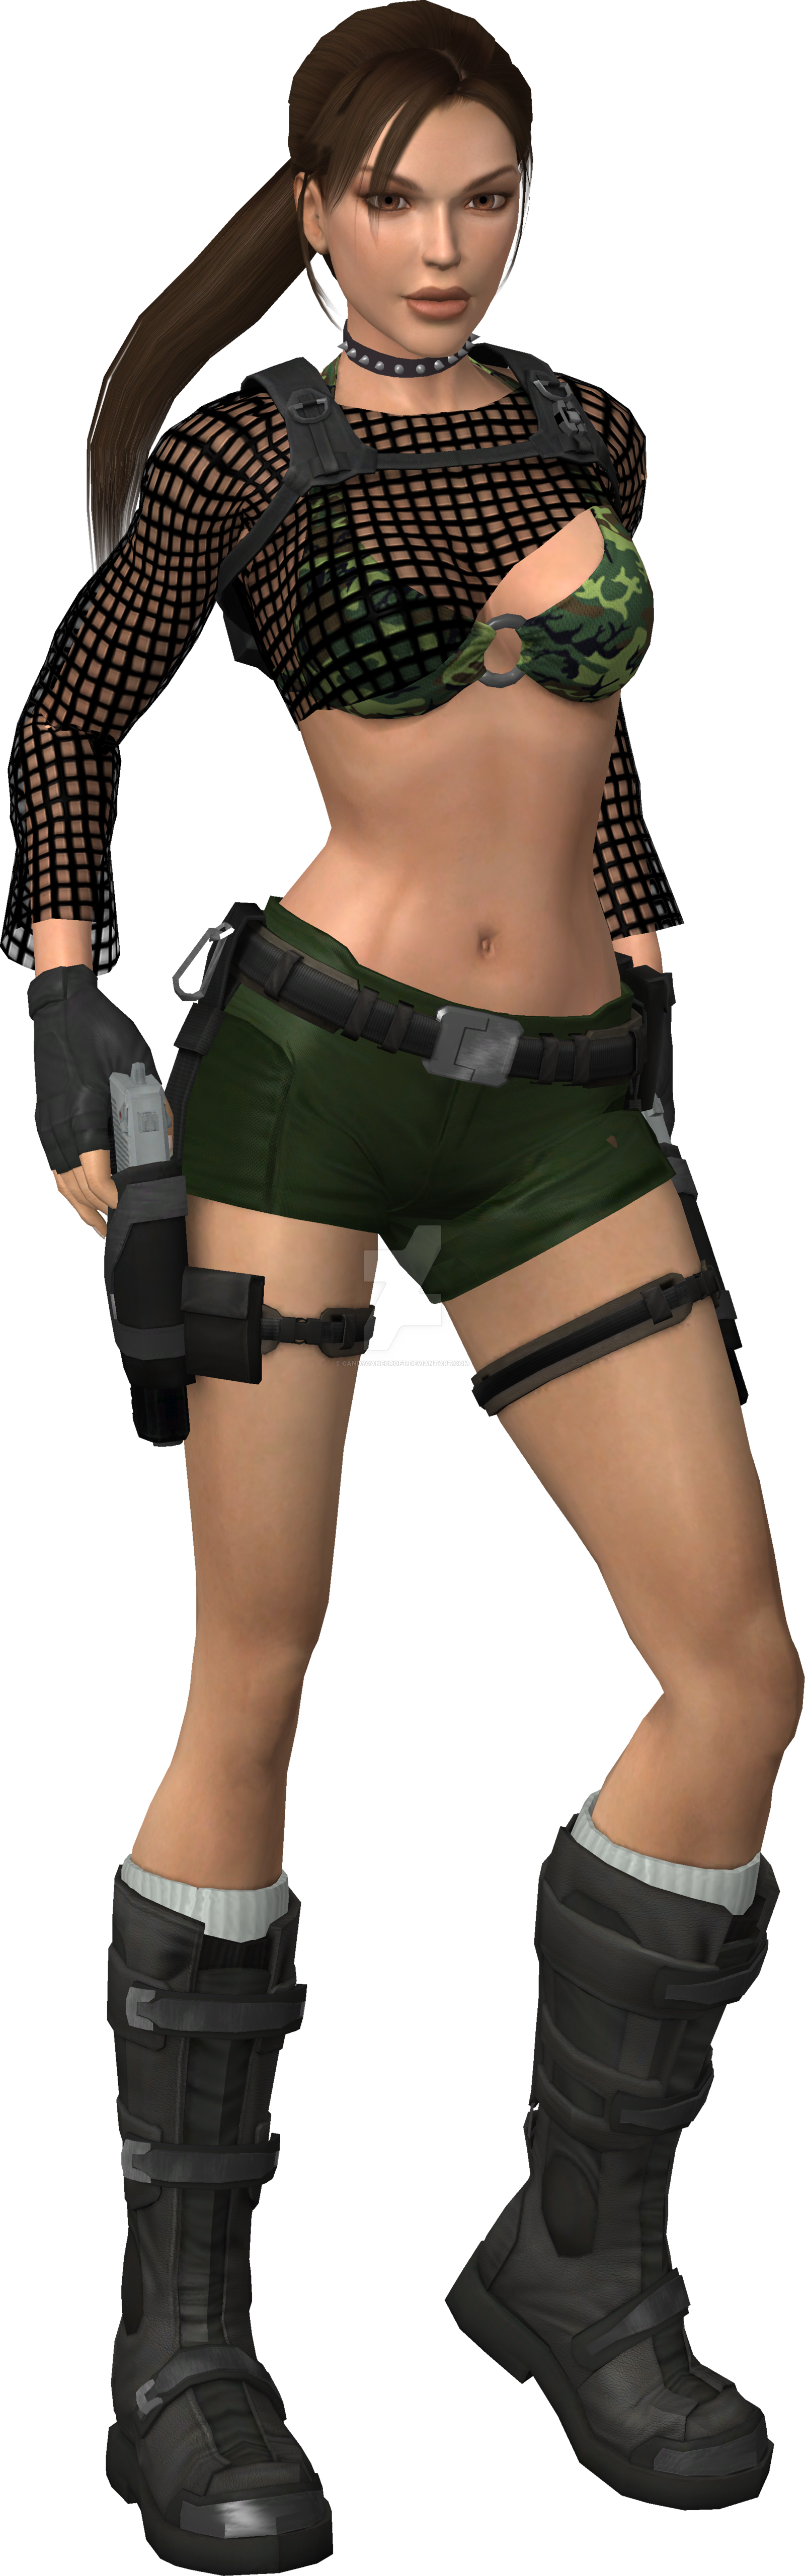 Lara Croft Art PNG Clipart